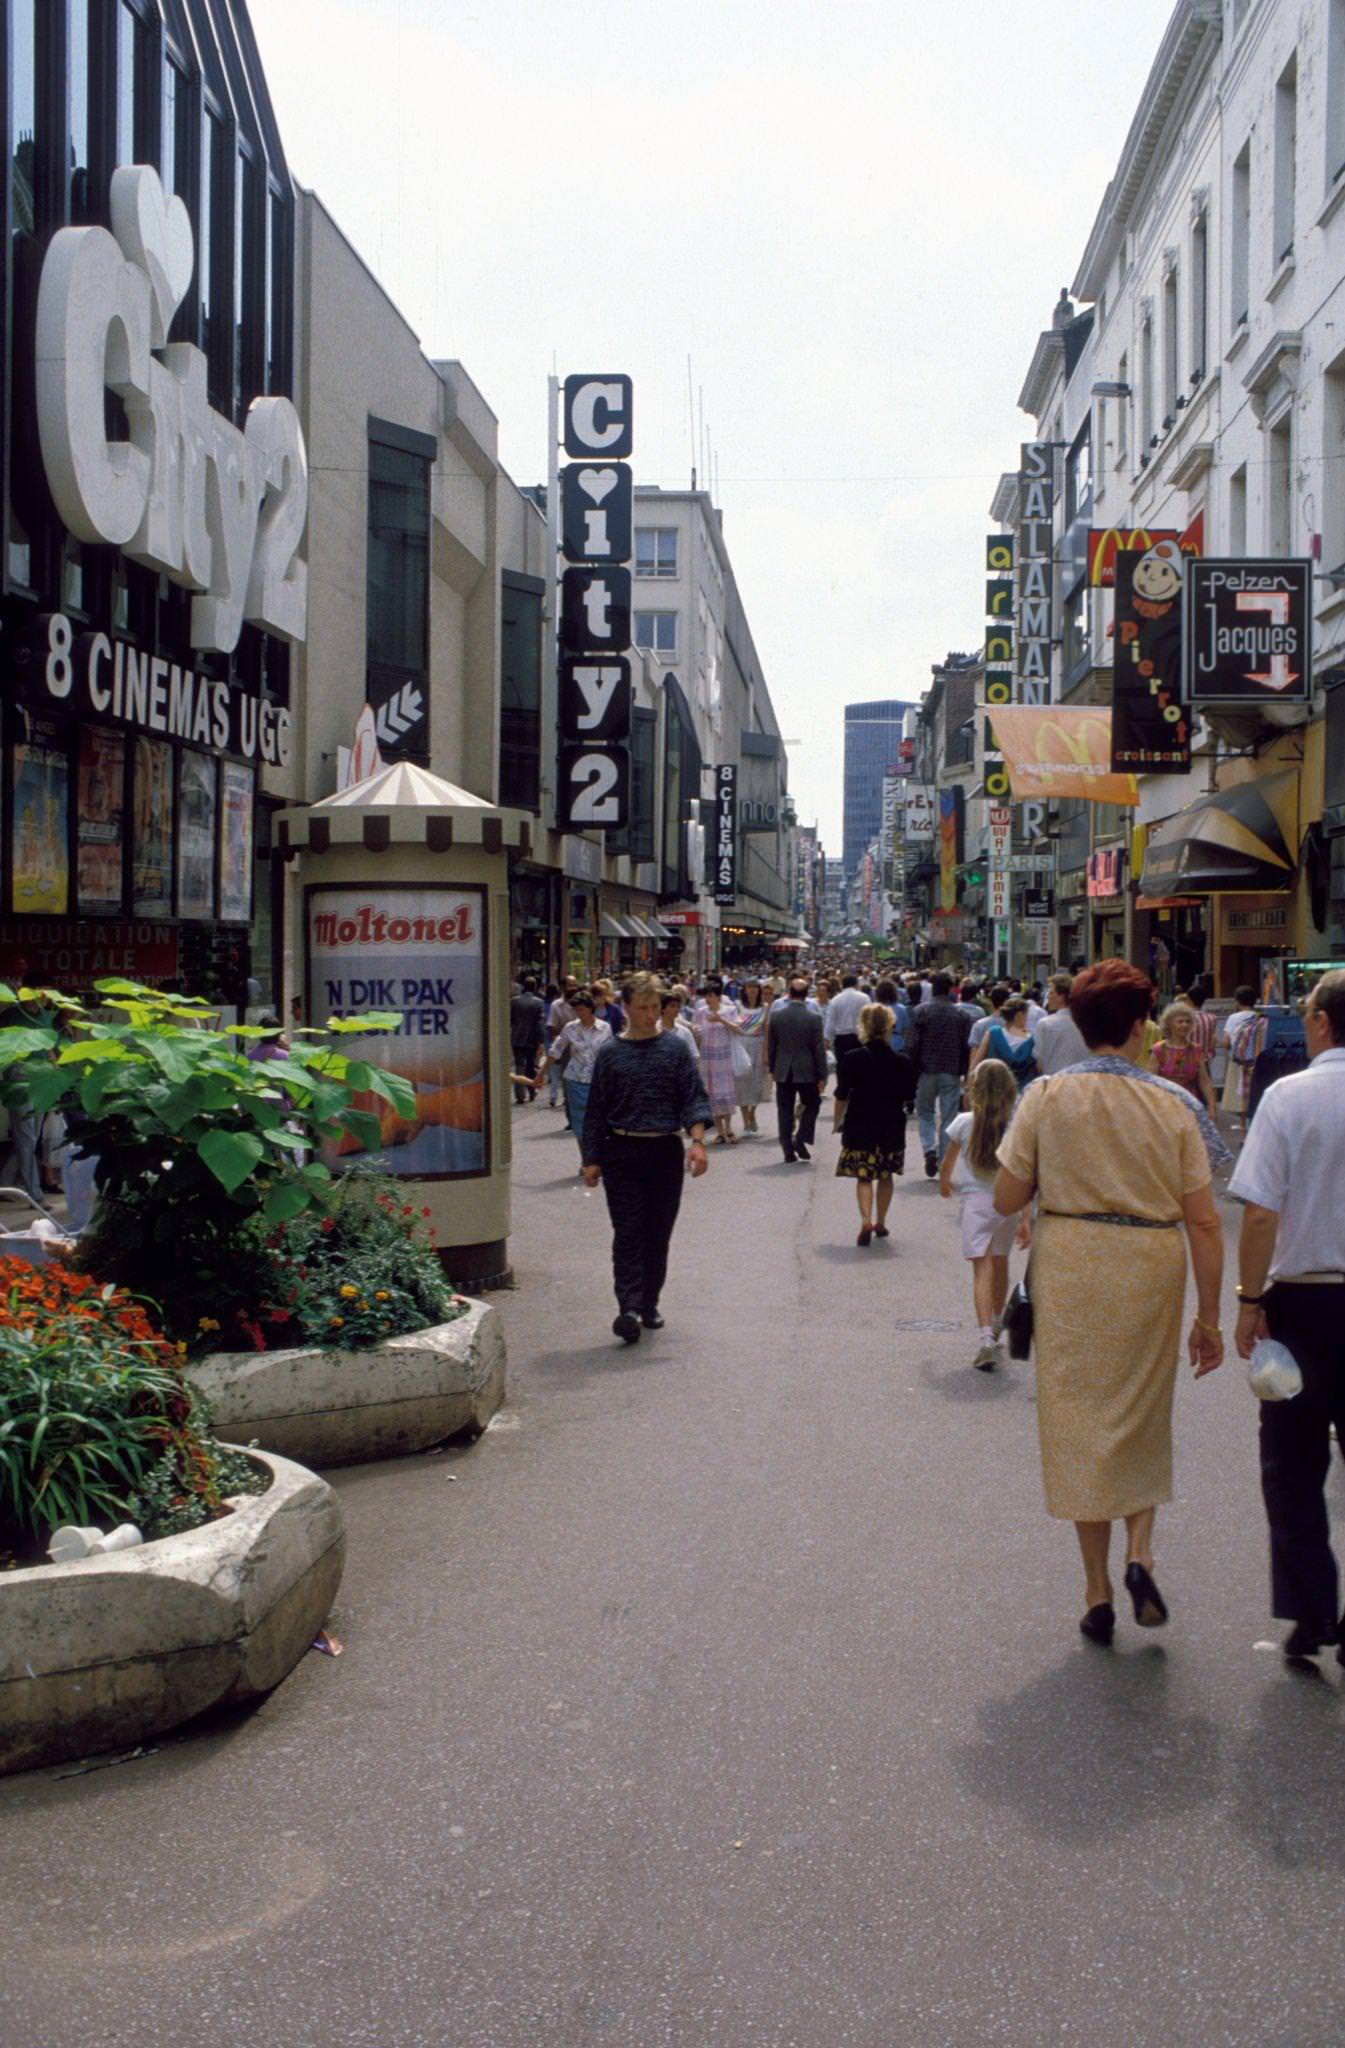 Neuve Street in Brussels, Belgium, 1986.